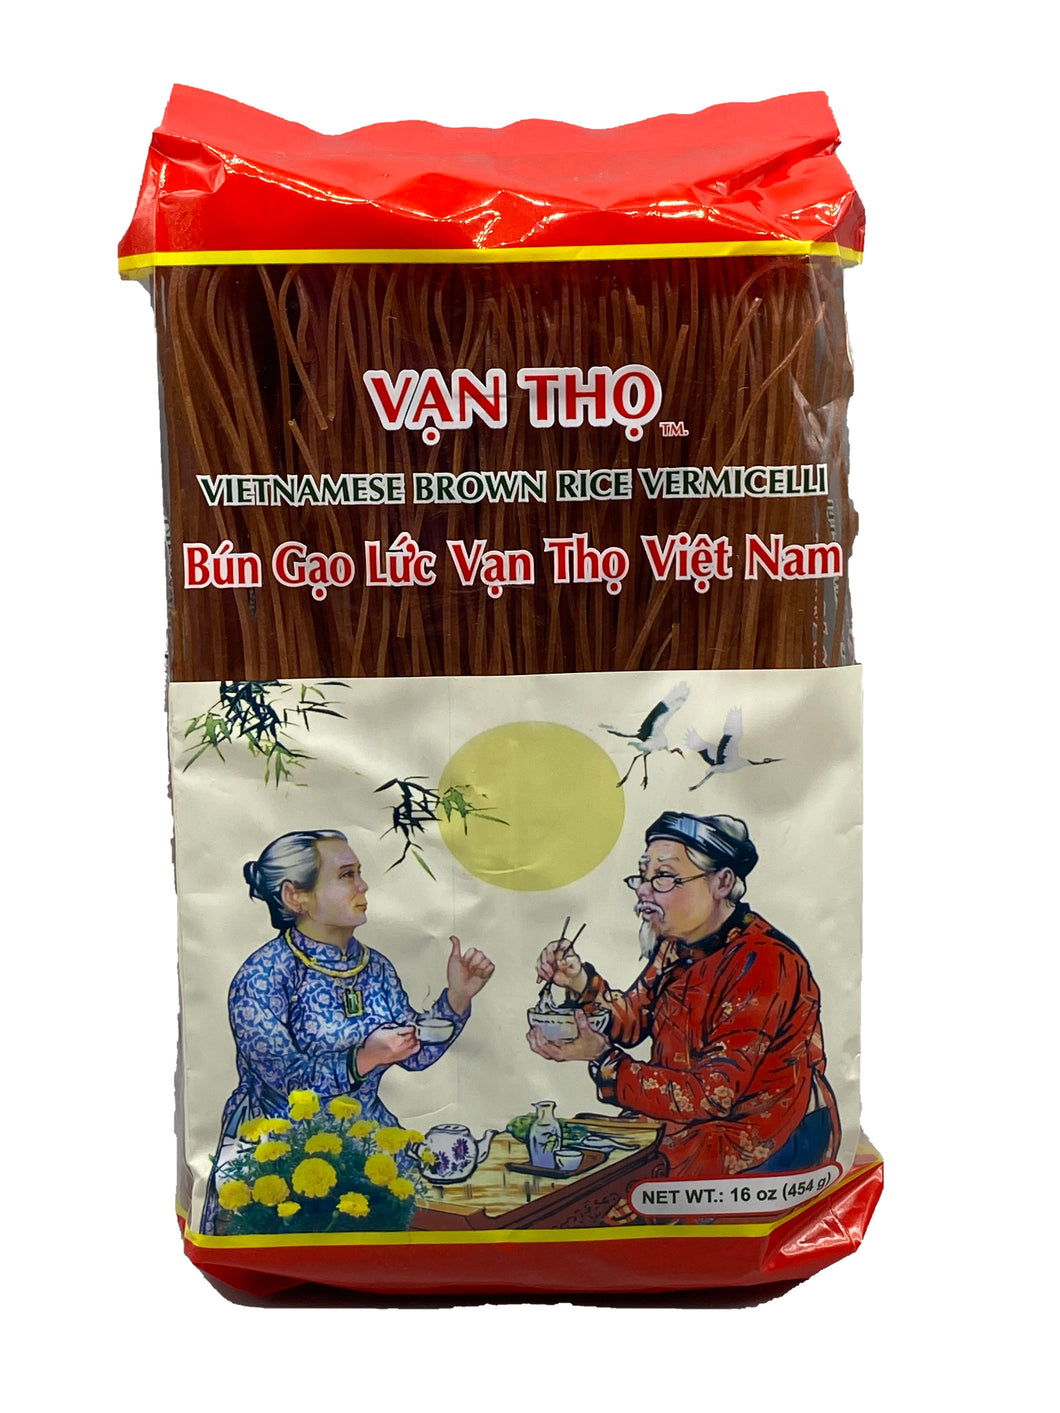 Van Tho Vietnamese Brown Rice Vermicelli